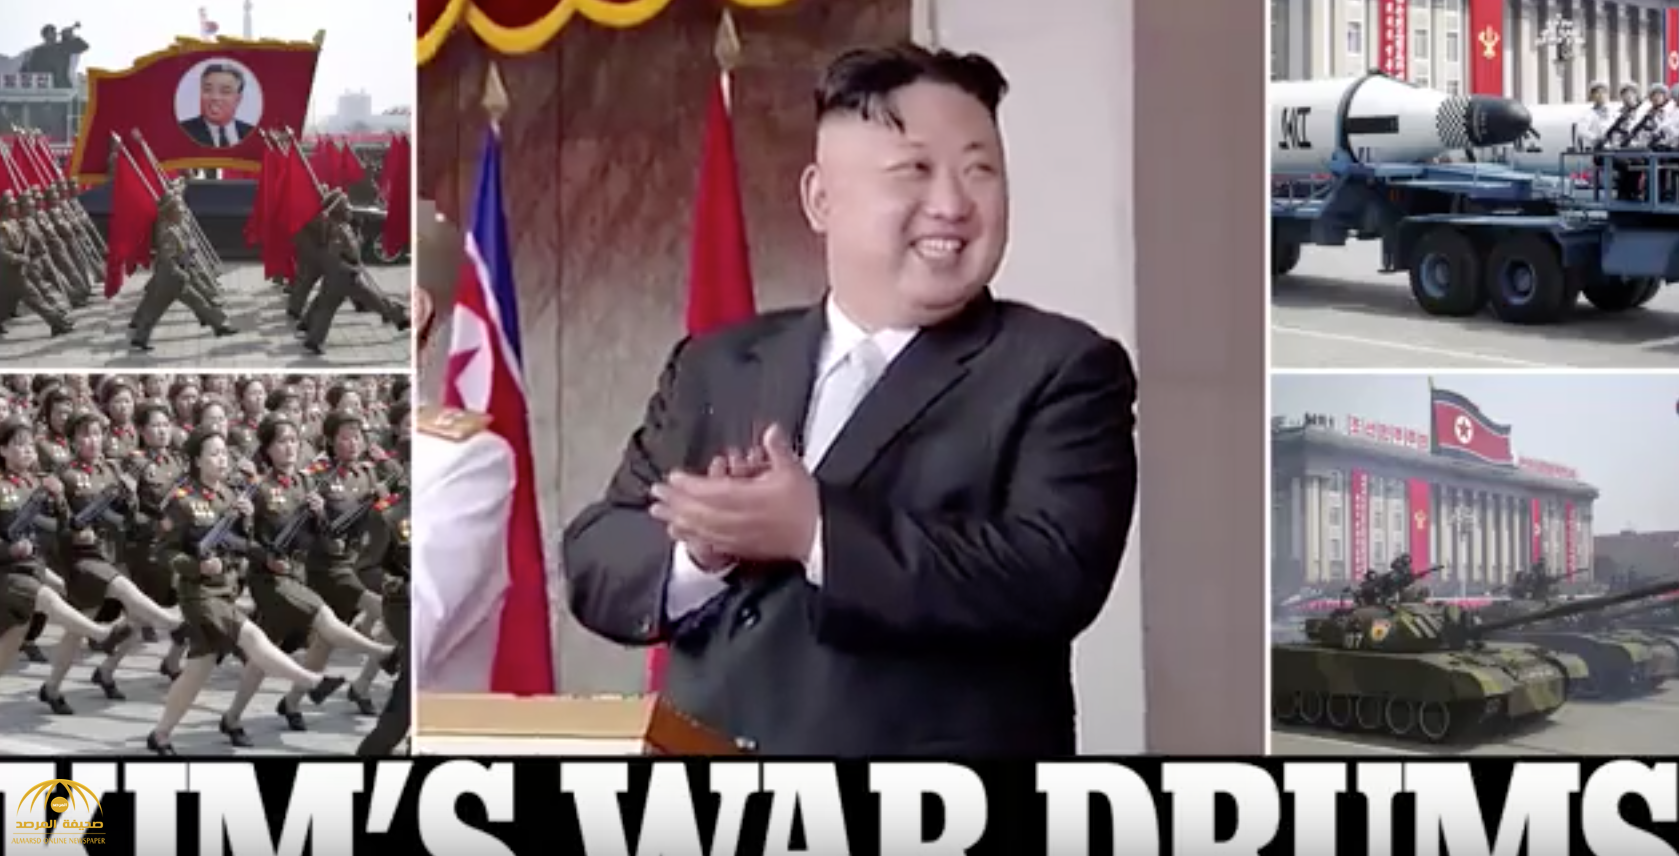 بالصور والفيديو: رئيس كوريا الشمالية يستعرض  قواته العسكرية وأسلحته الصاروخية ويهدد بتدمير أمريكا!